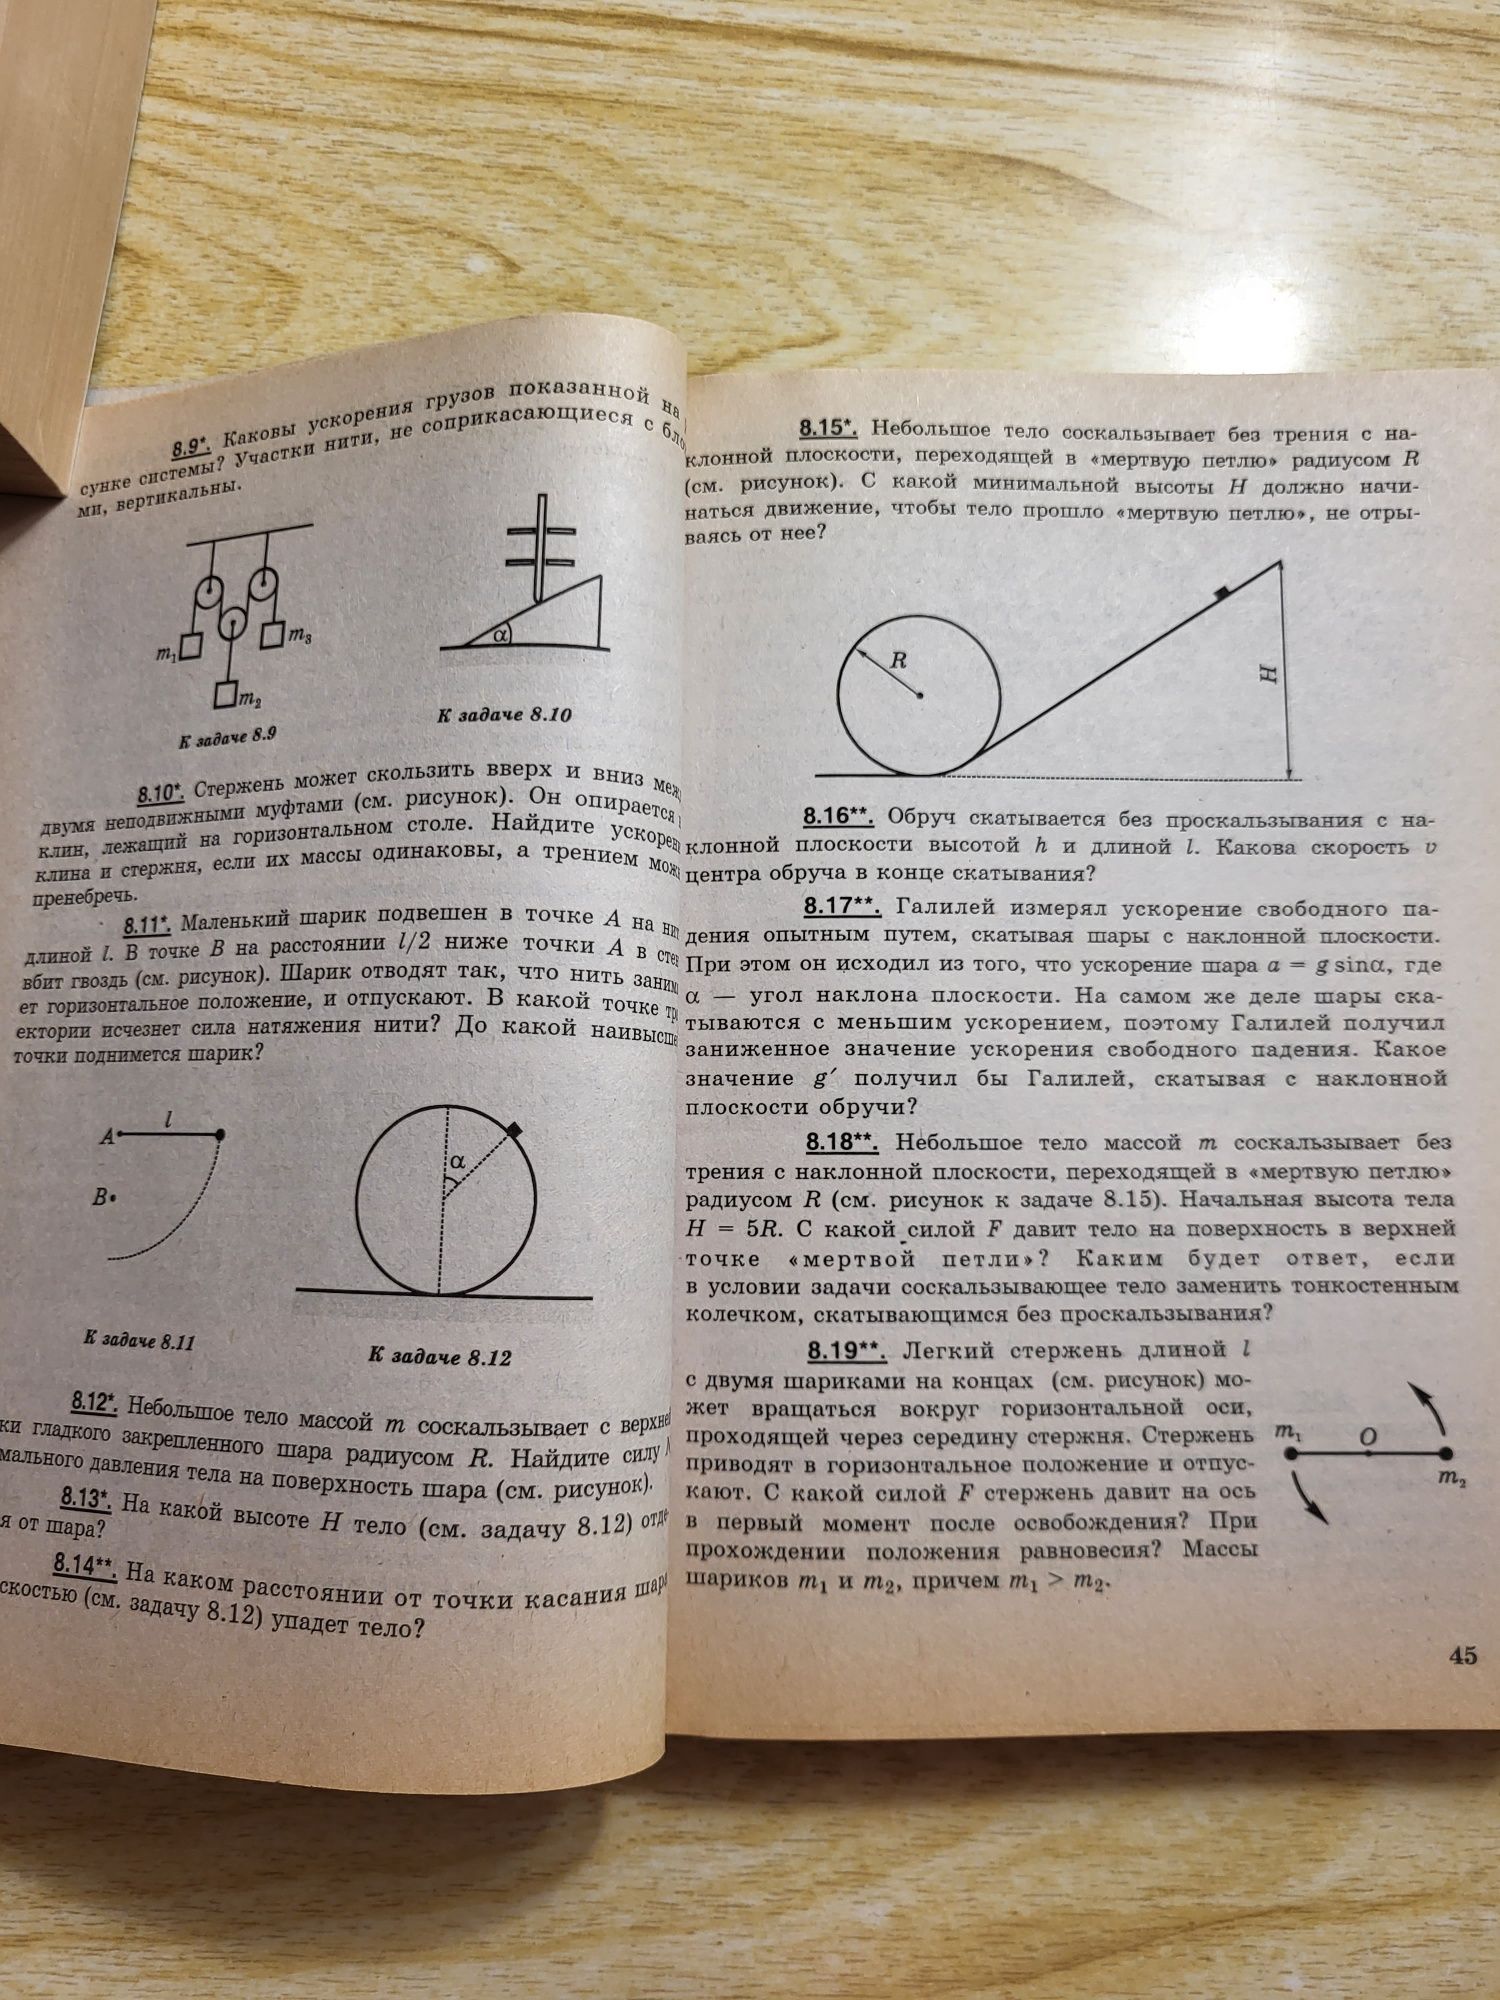 Гельфгат, Генденштейн,Кирик "1001 задача по физике"с ответами, решение